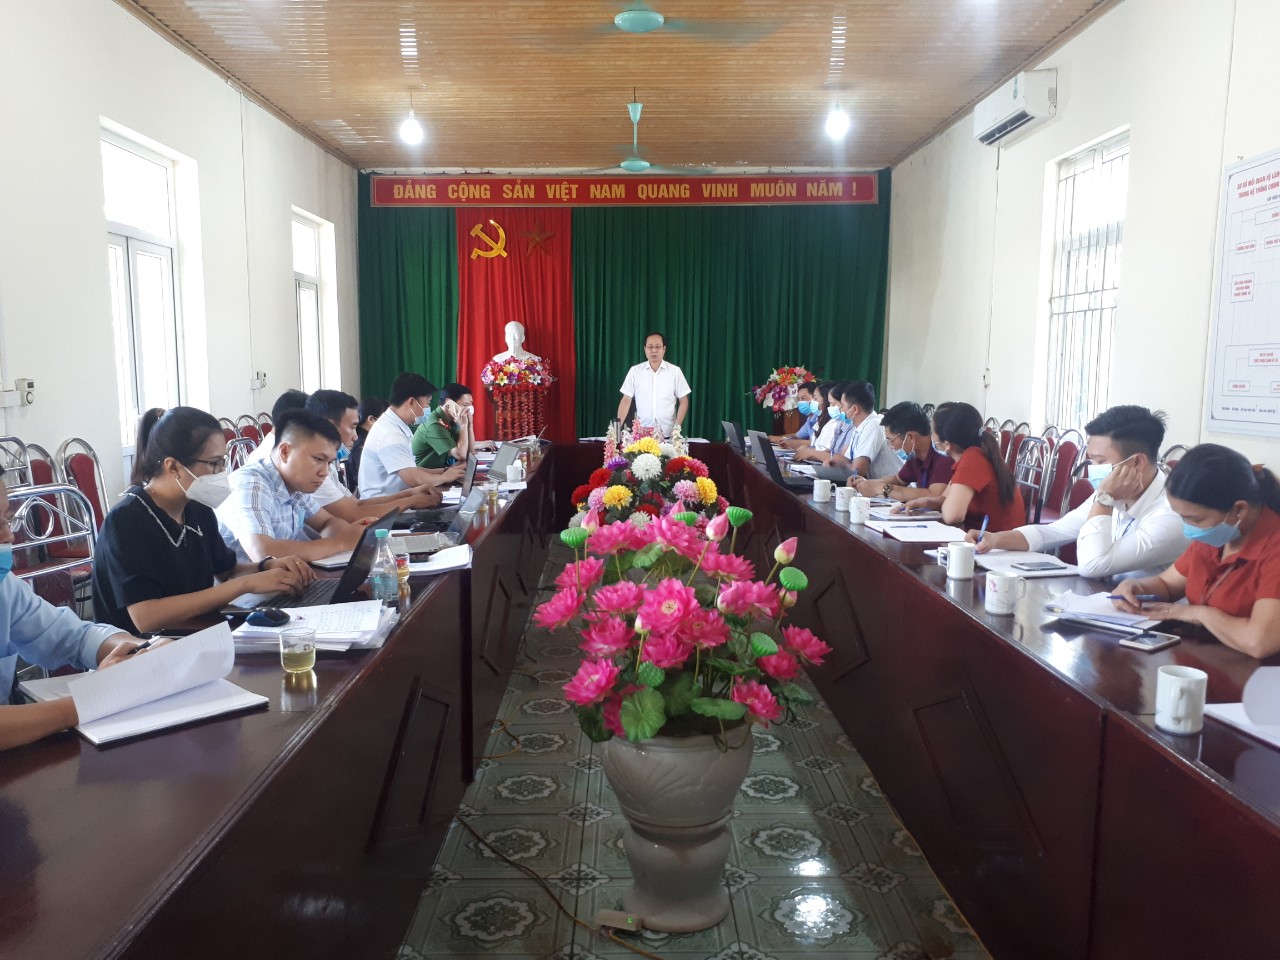 Đồng chí Hà Việt Hưng, tỉnh ủy viên, Bí thư Huyện ủy Bắc Quang, kiểm tra công tác xây dựng Đảng và hệ thống chính trị đối với Đảng ủy thị trấn Vĩnh Tuy